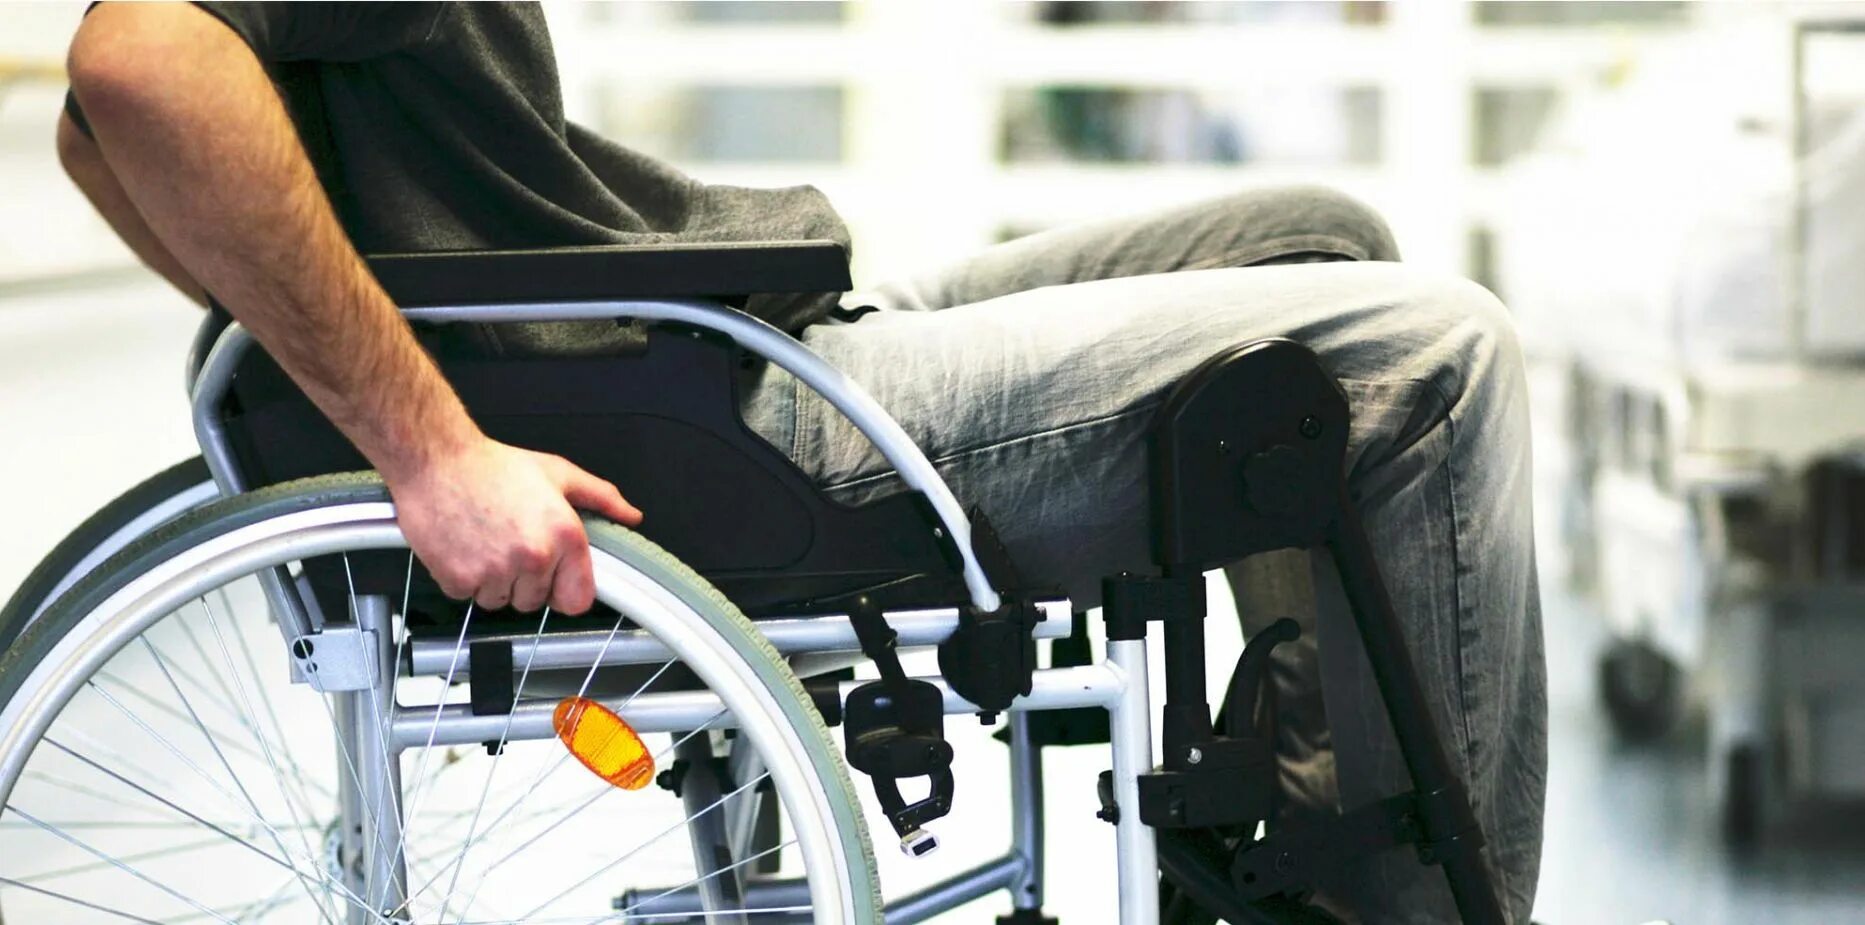 Rollstuhl. Чехлы для инвалидов. Ограниченные возможности колена. Боль в суставах инвалидное кресло. Увеличение инвалидности